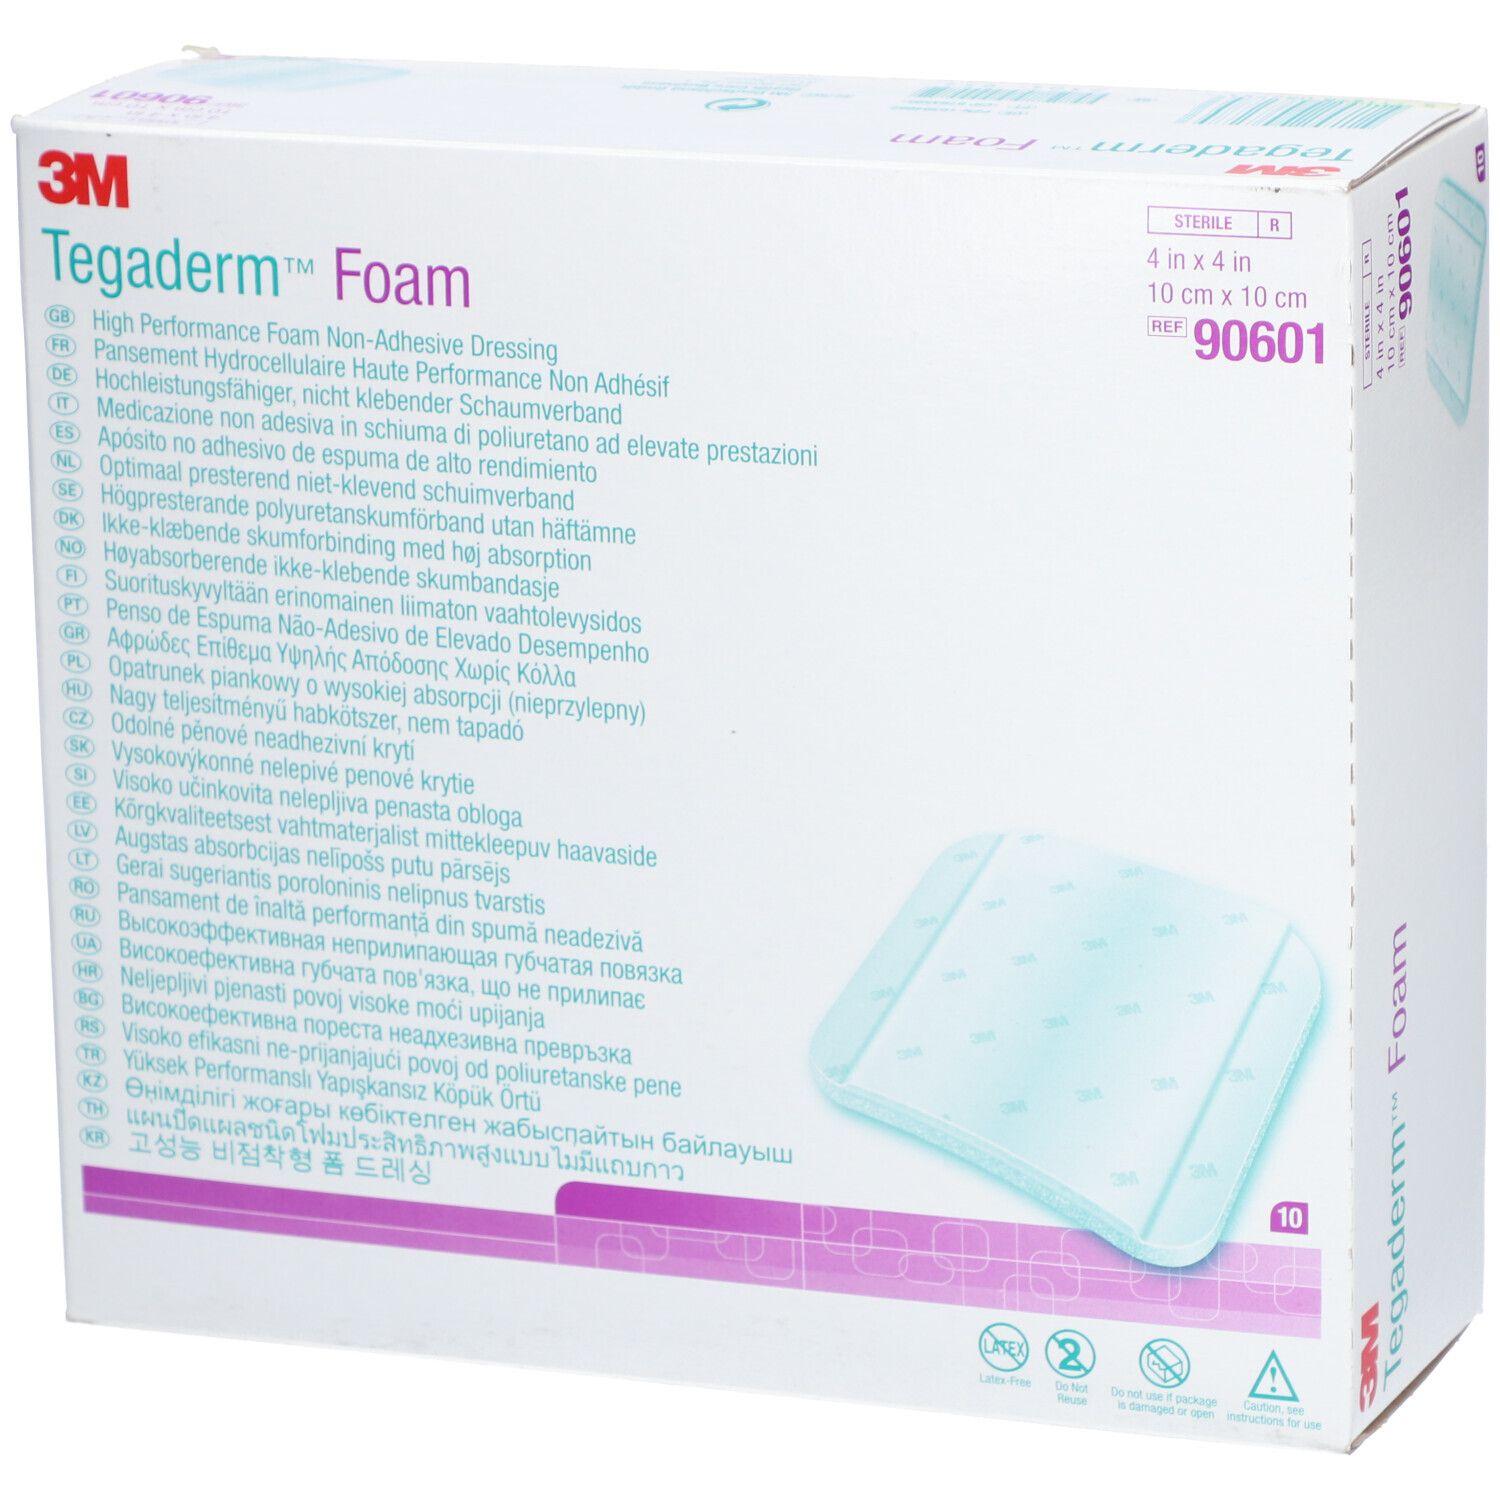 3M™ Tegaderm™ Foam Adhesive hochleistungsfähiger nicht klebender Schaumverband 10 x 10 cm